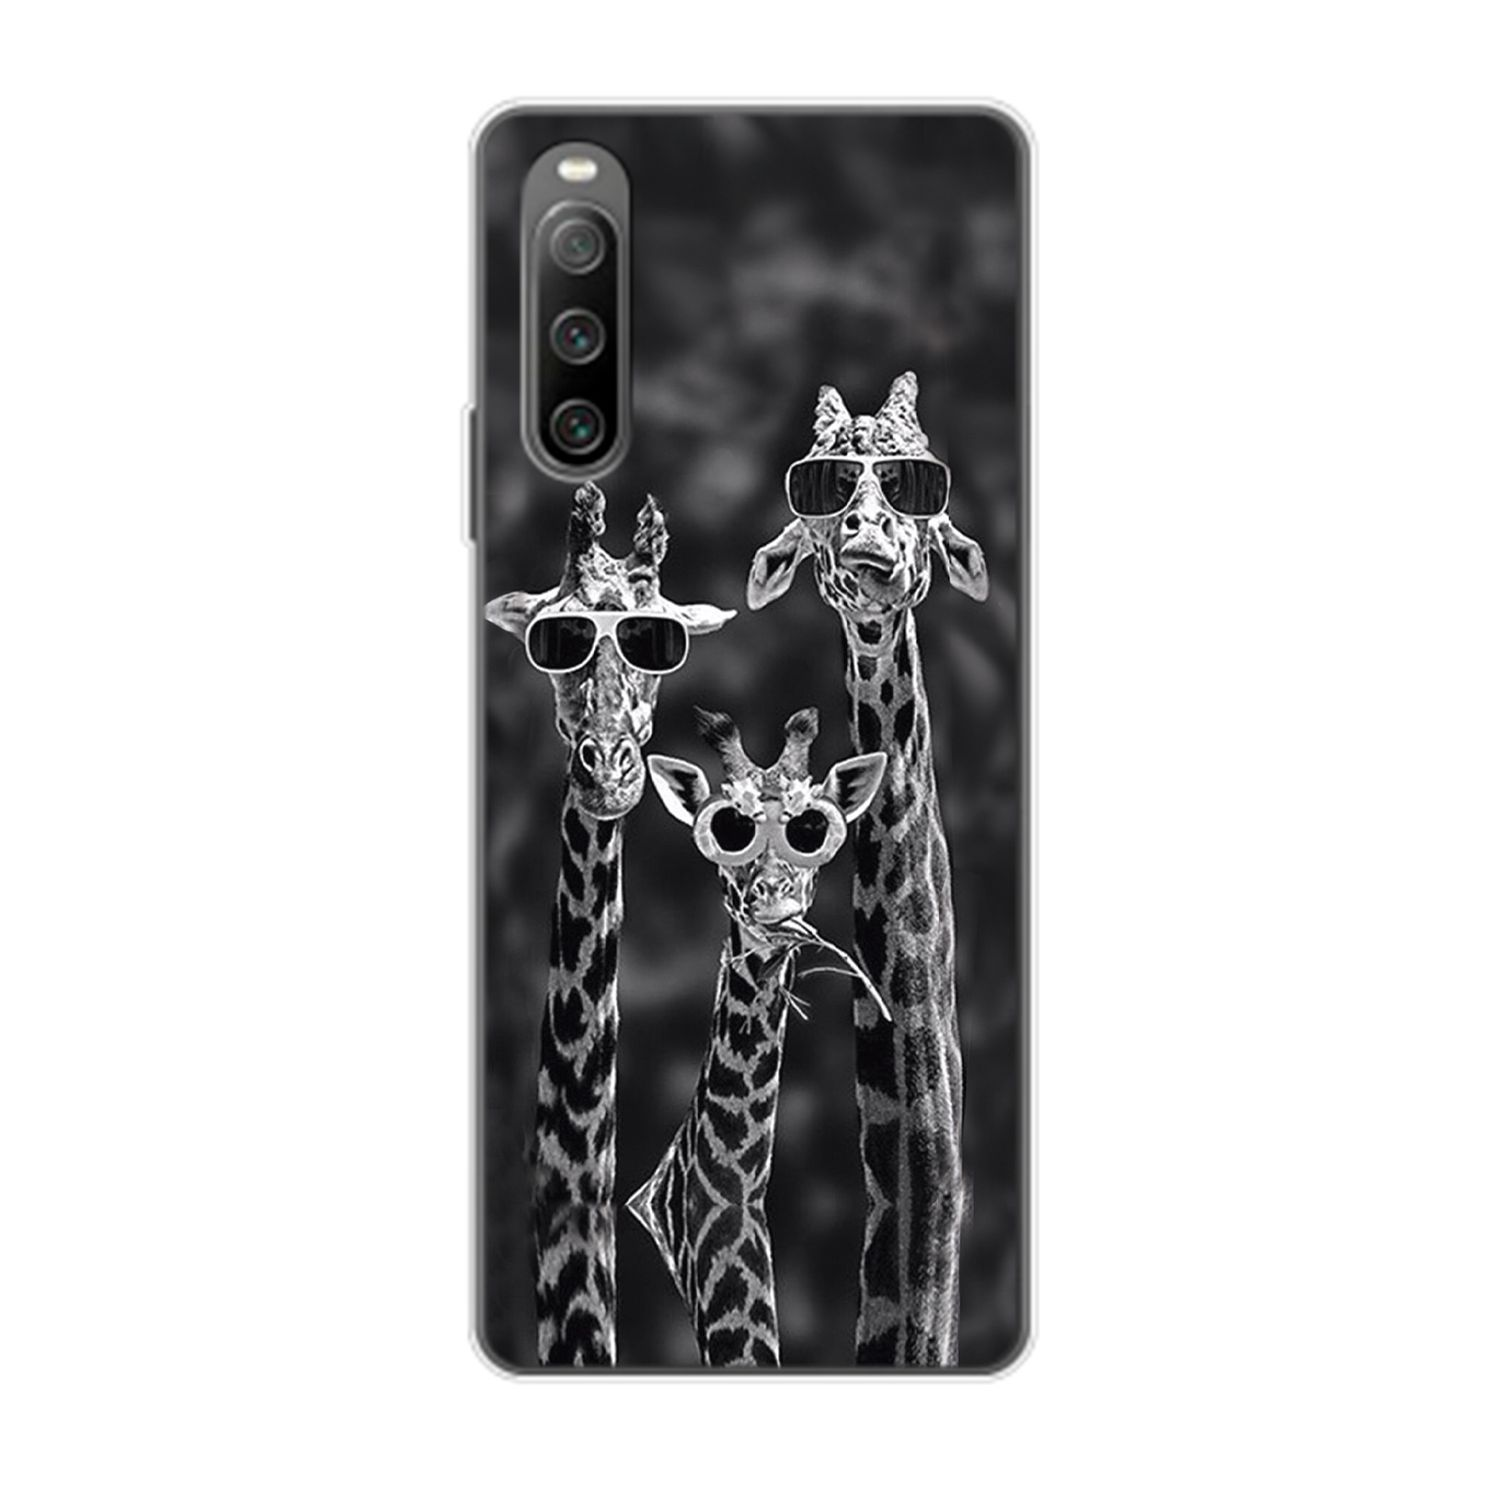 KÖNIG DESIGN Case, Xperia IV, 3 Giraffen Backcover, 10 Sony